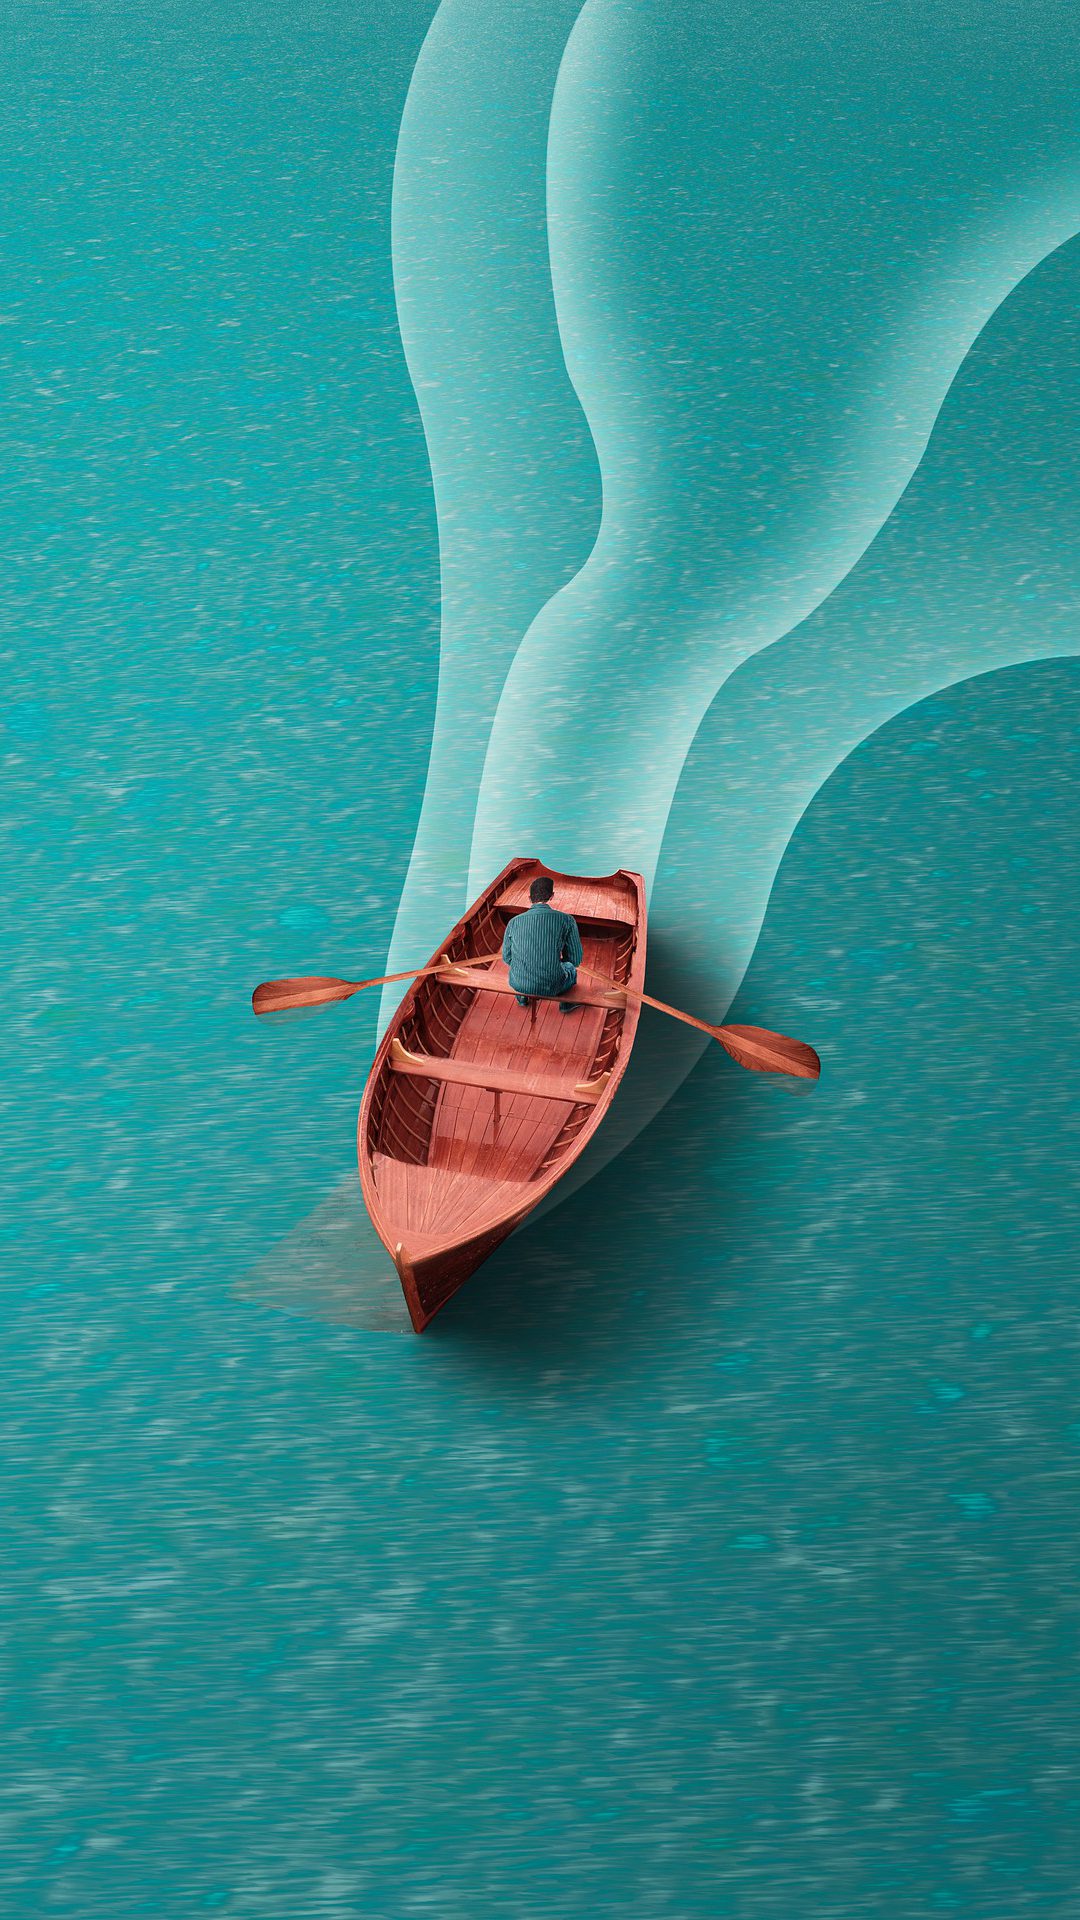 一个划船的男子非主流插画手机壁纸图片 平静蔚蓝的湖面